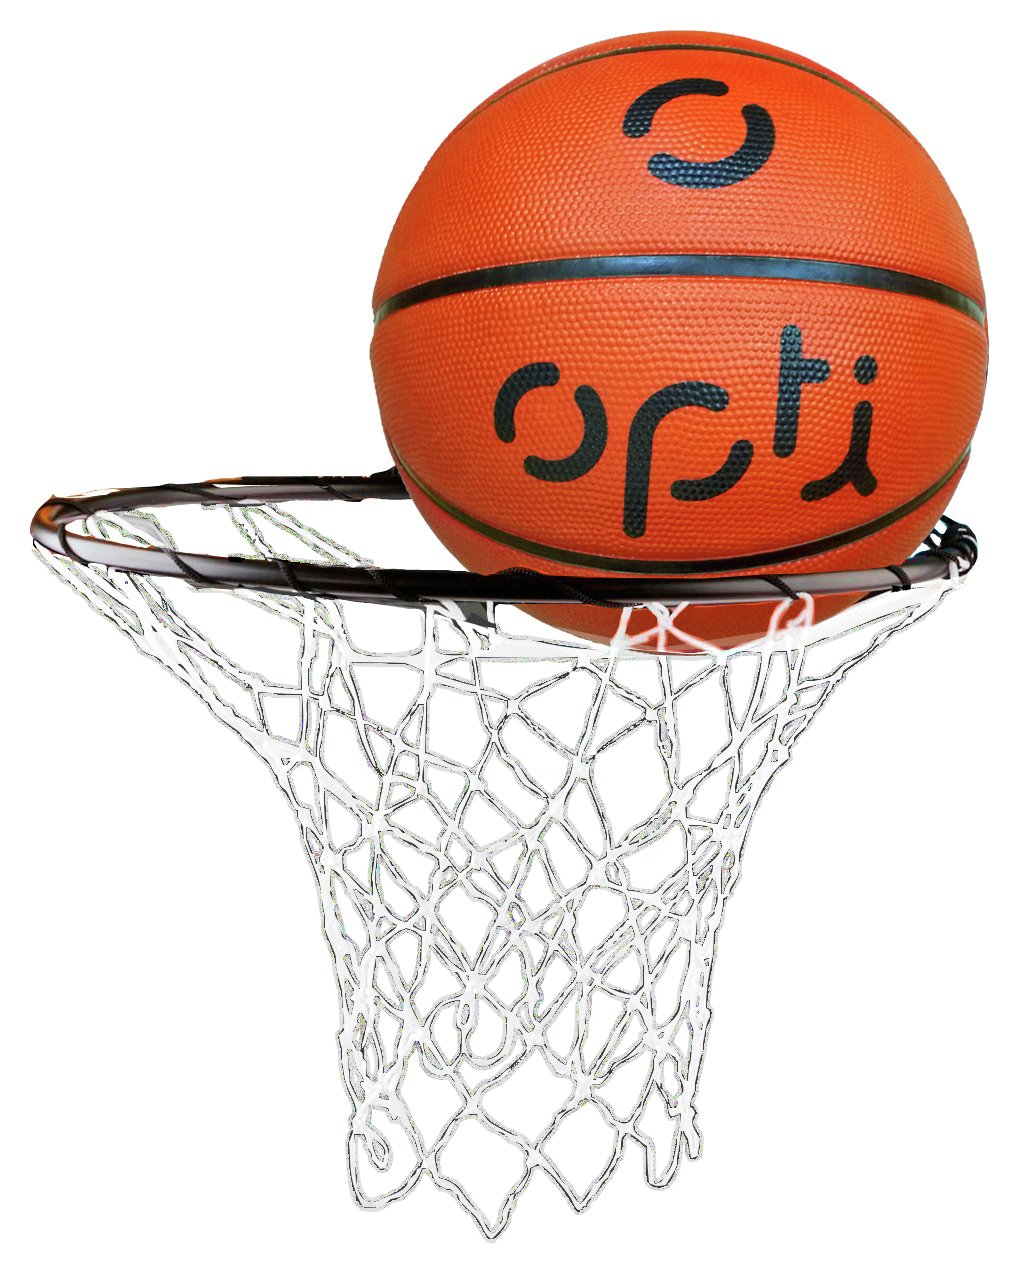 Opti Basketball Hoop, Net and Ball Set